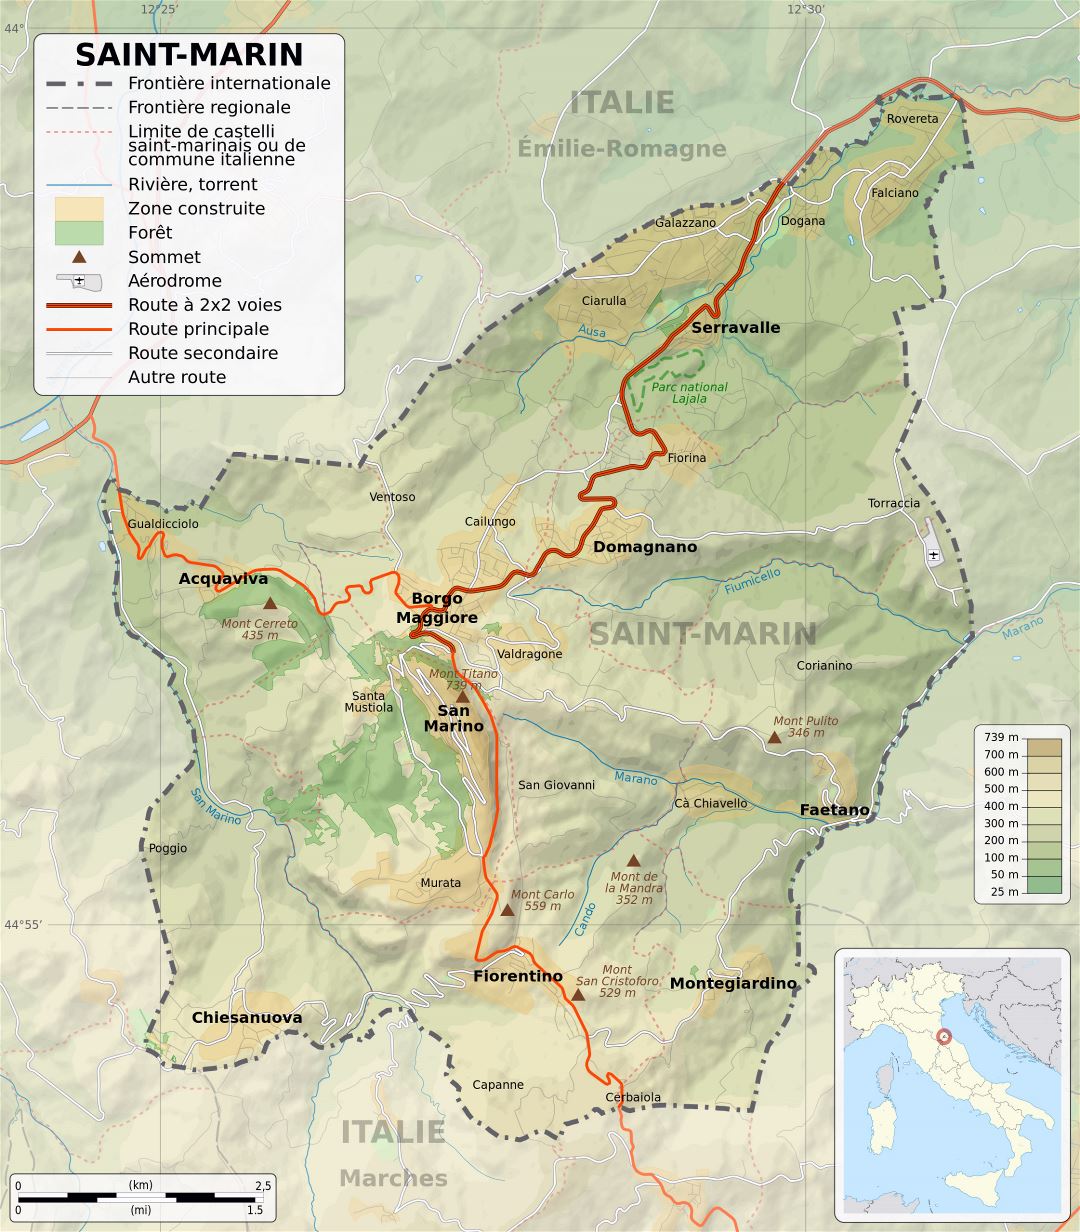 Grande detallado mapa físico de San Marino con carreteras, ciudades y otras marcas en francés